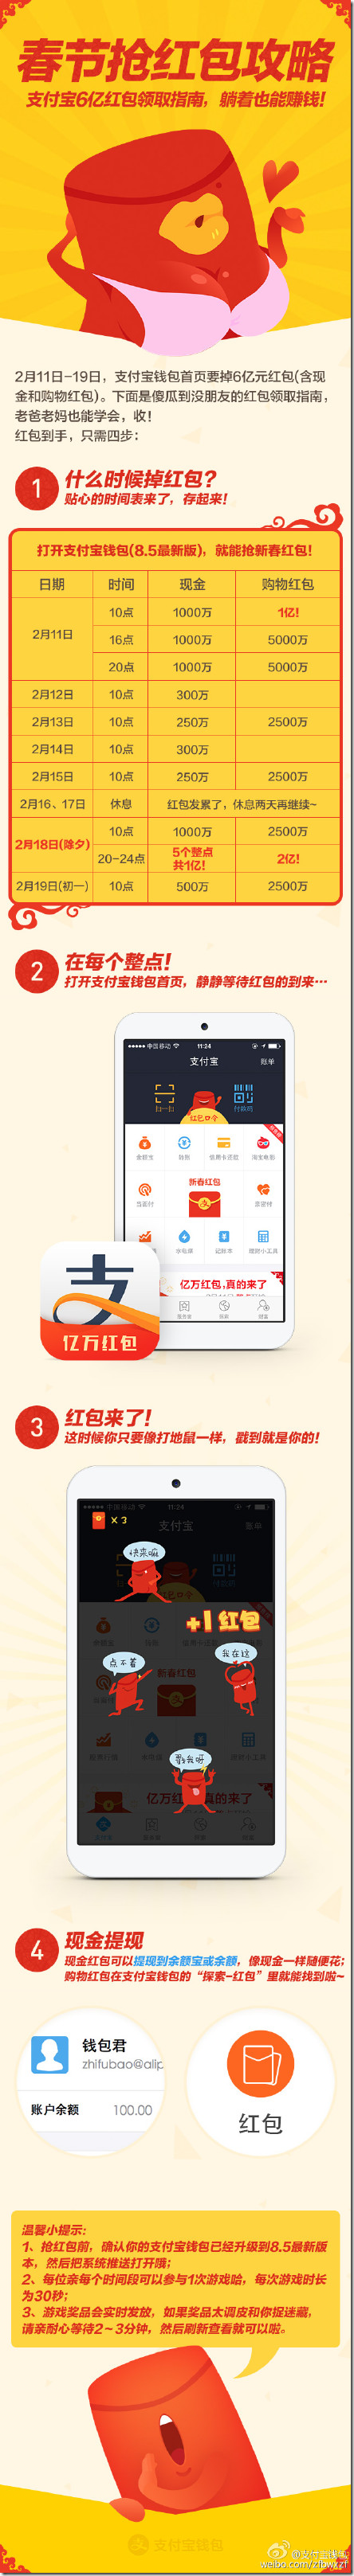 微信微博支付宝QQ百度红包时间表 2015除夕 新年几十亿红包任你抢-图片5